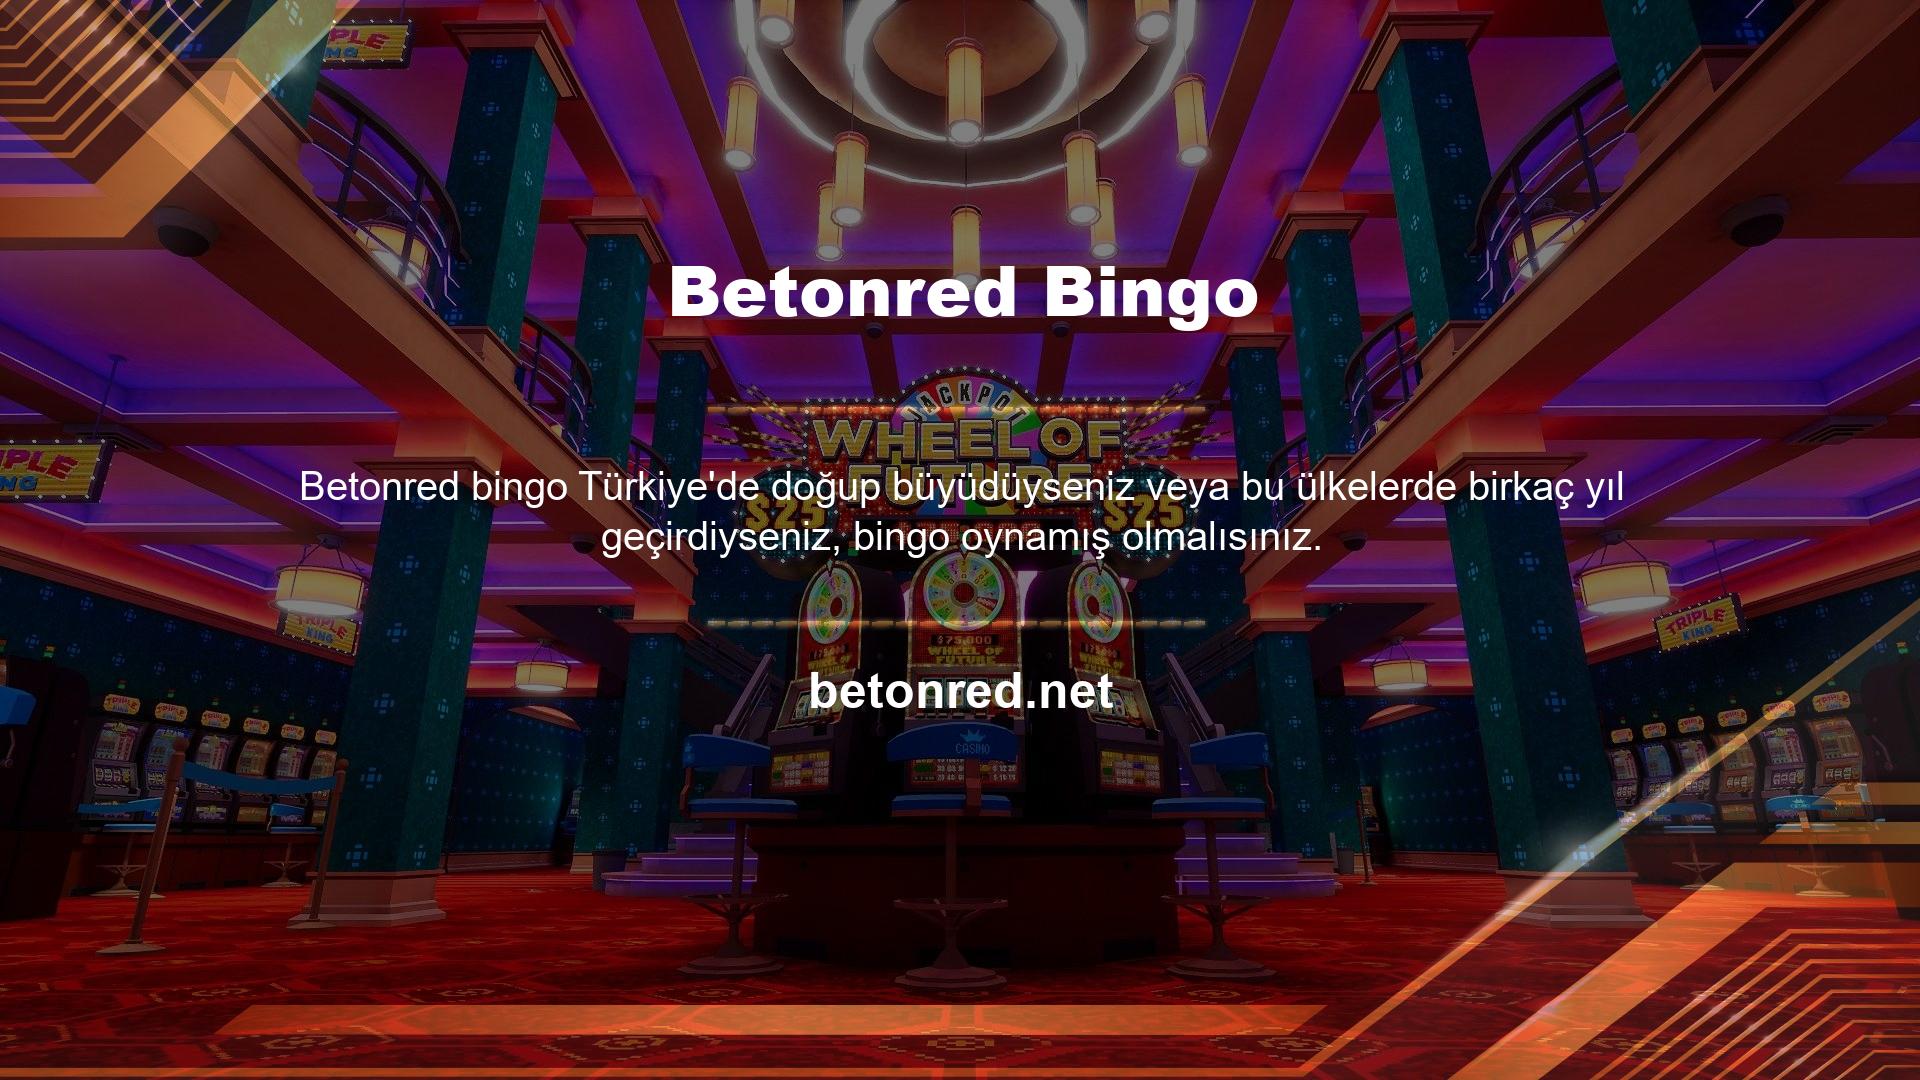 Bingo, ülkemizde çok ünlü olduğu için çevrimiçi casino sitelerinin kullanıcıları arasında çok ünlü bir oyundur